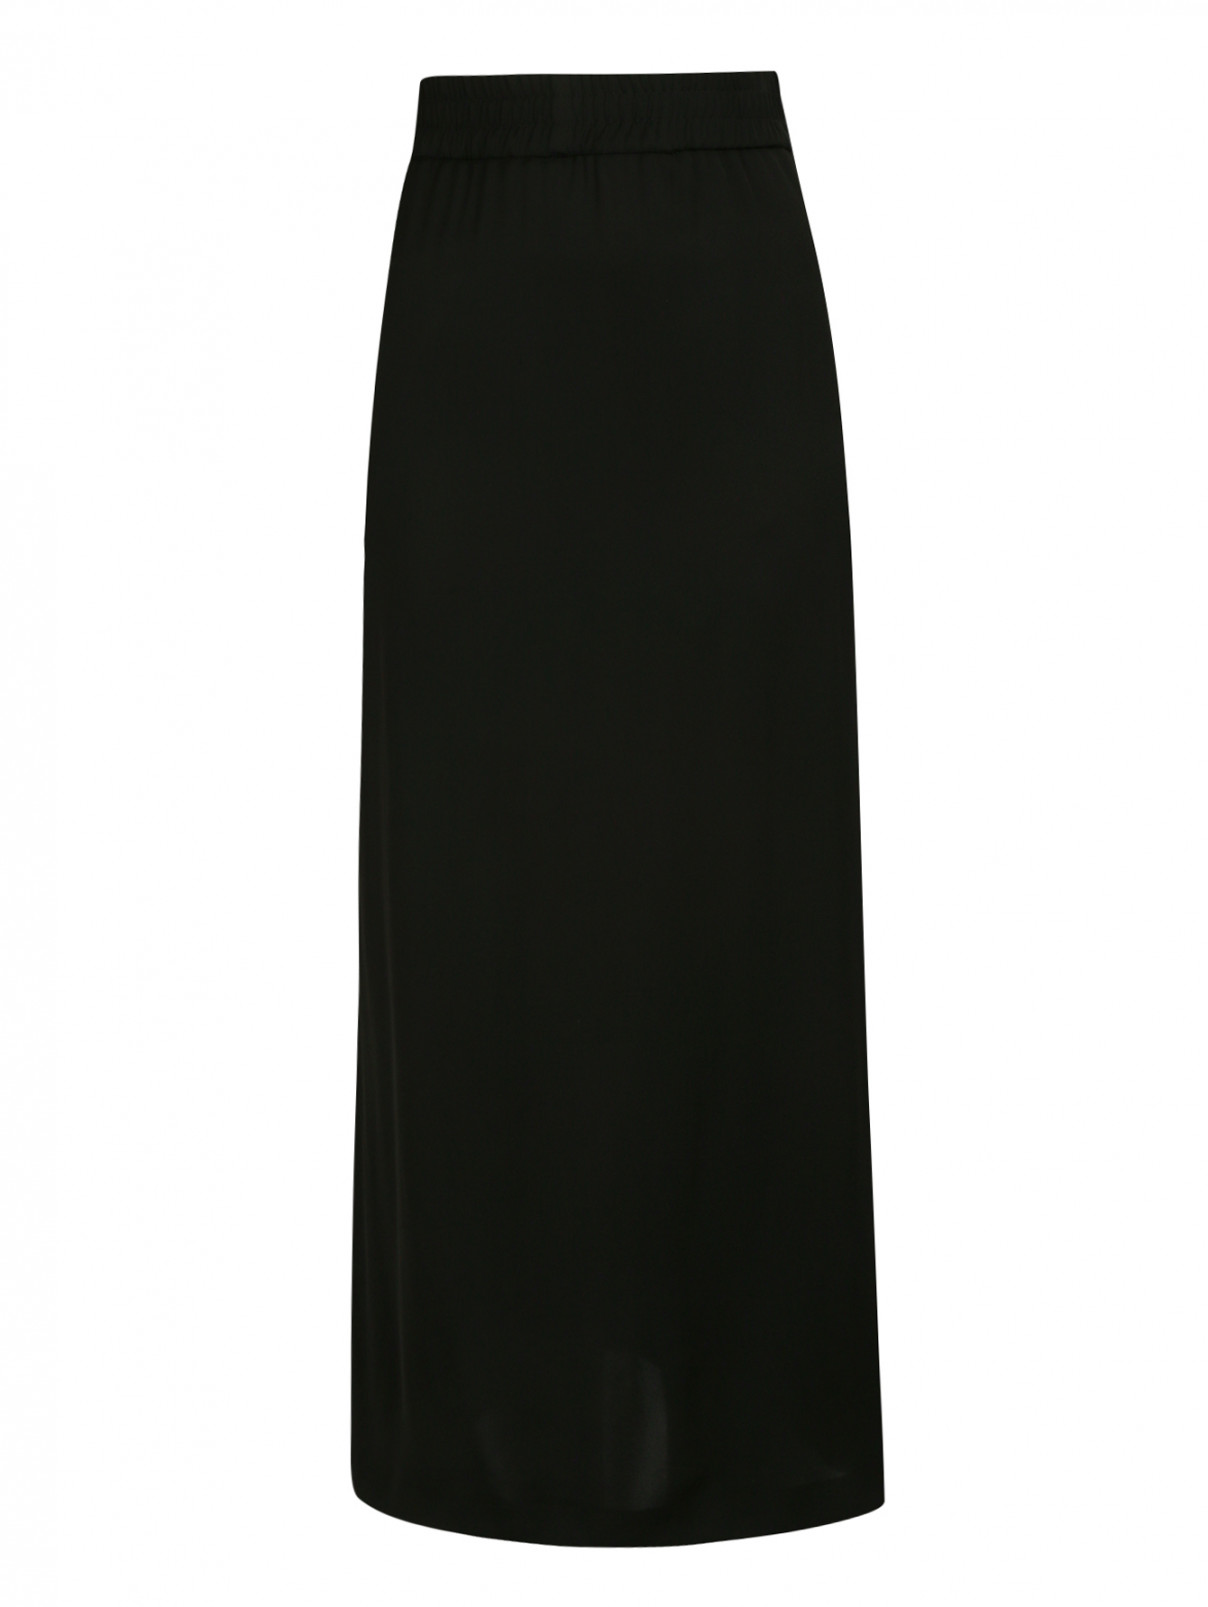 Юбка-миди с боковыми карманами Moschino Boutique  –  Общий вид  – Цвет:  Черный